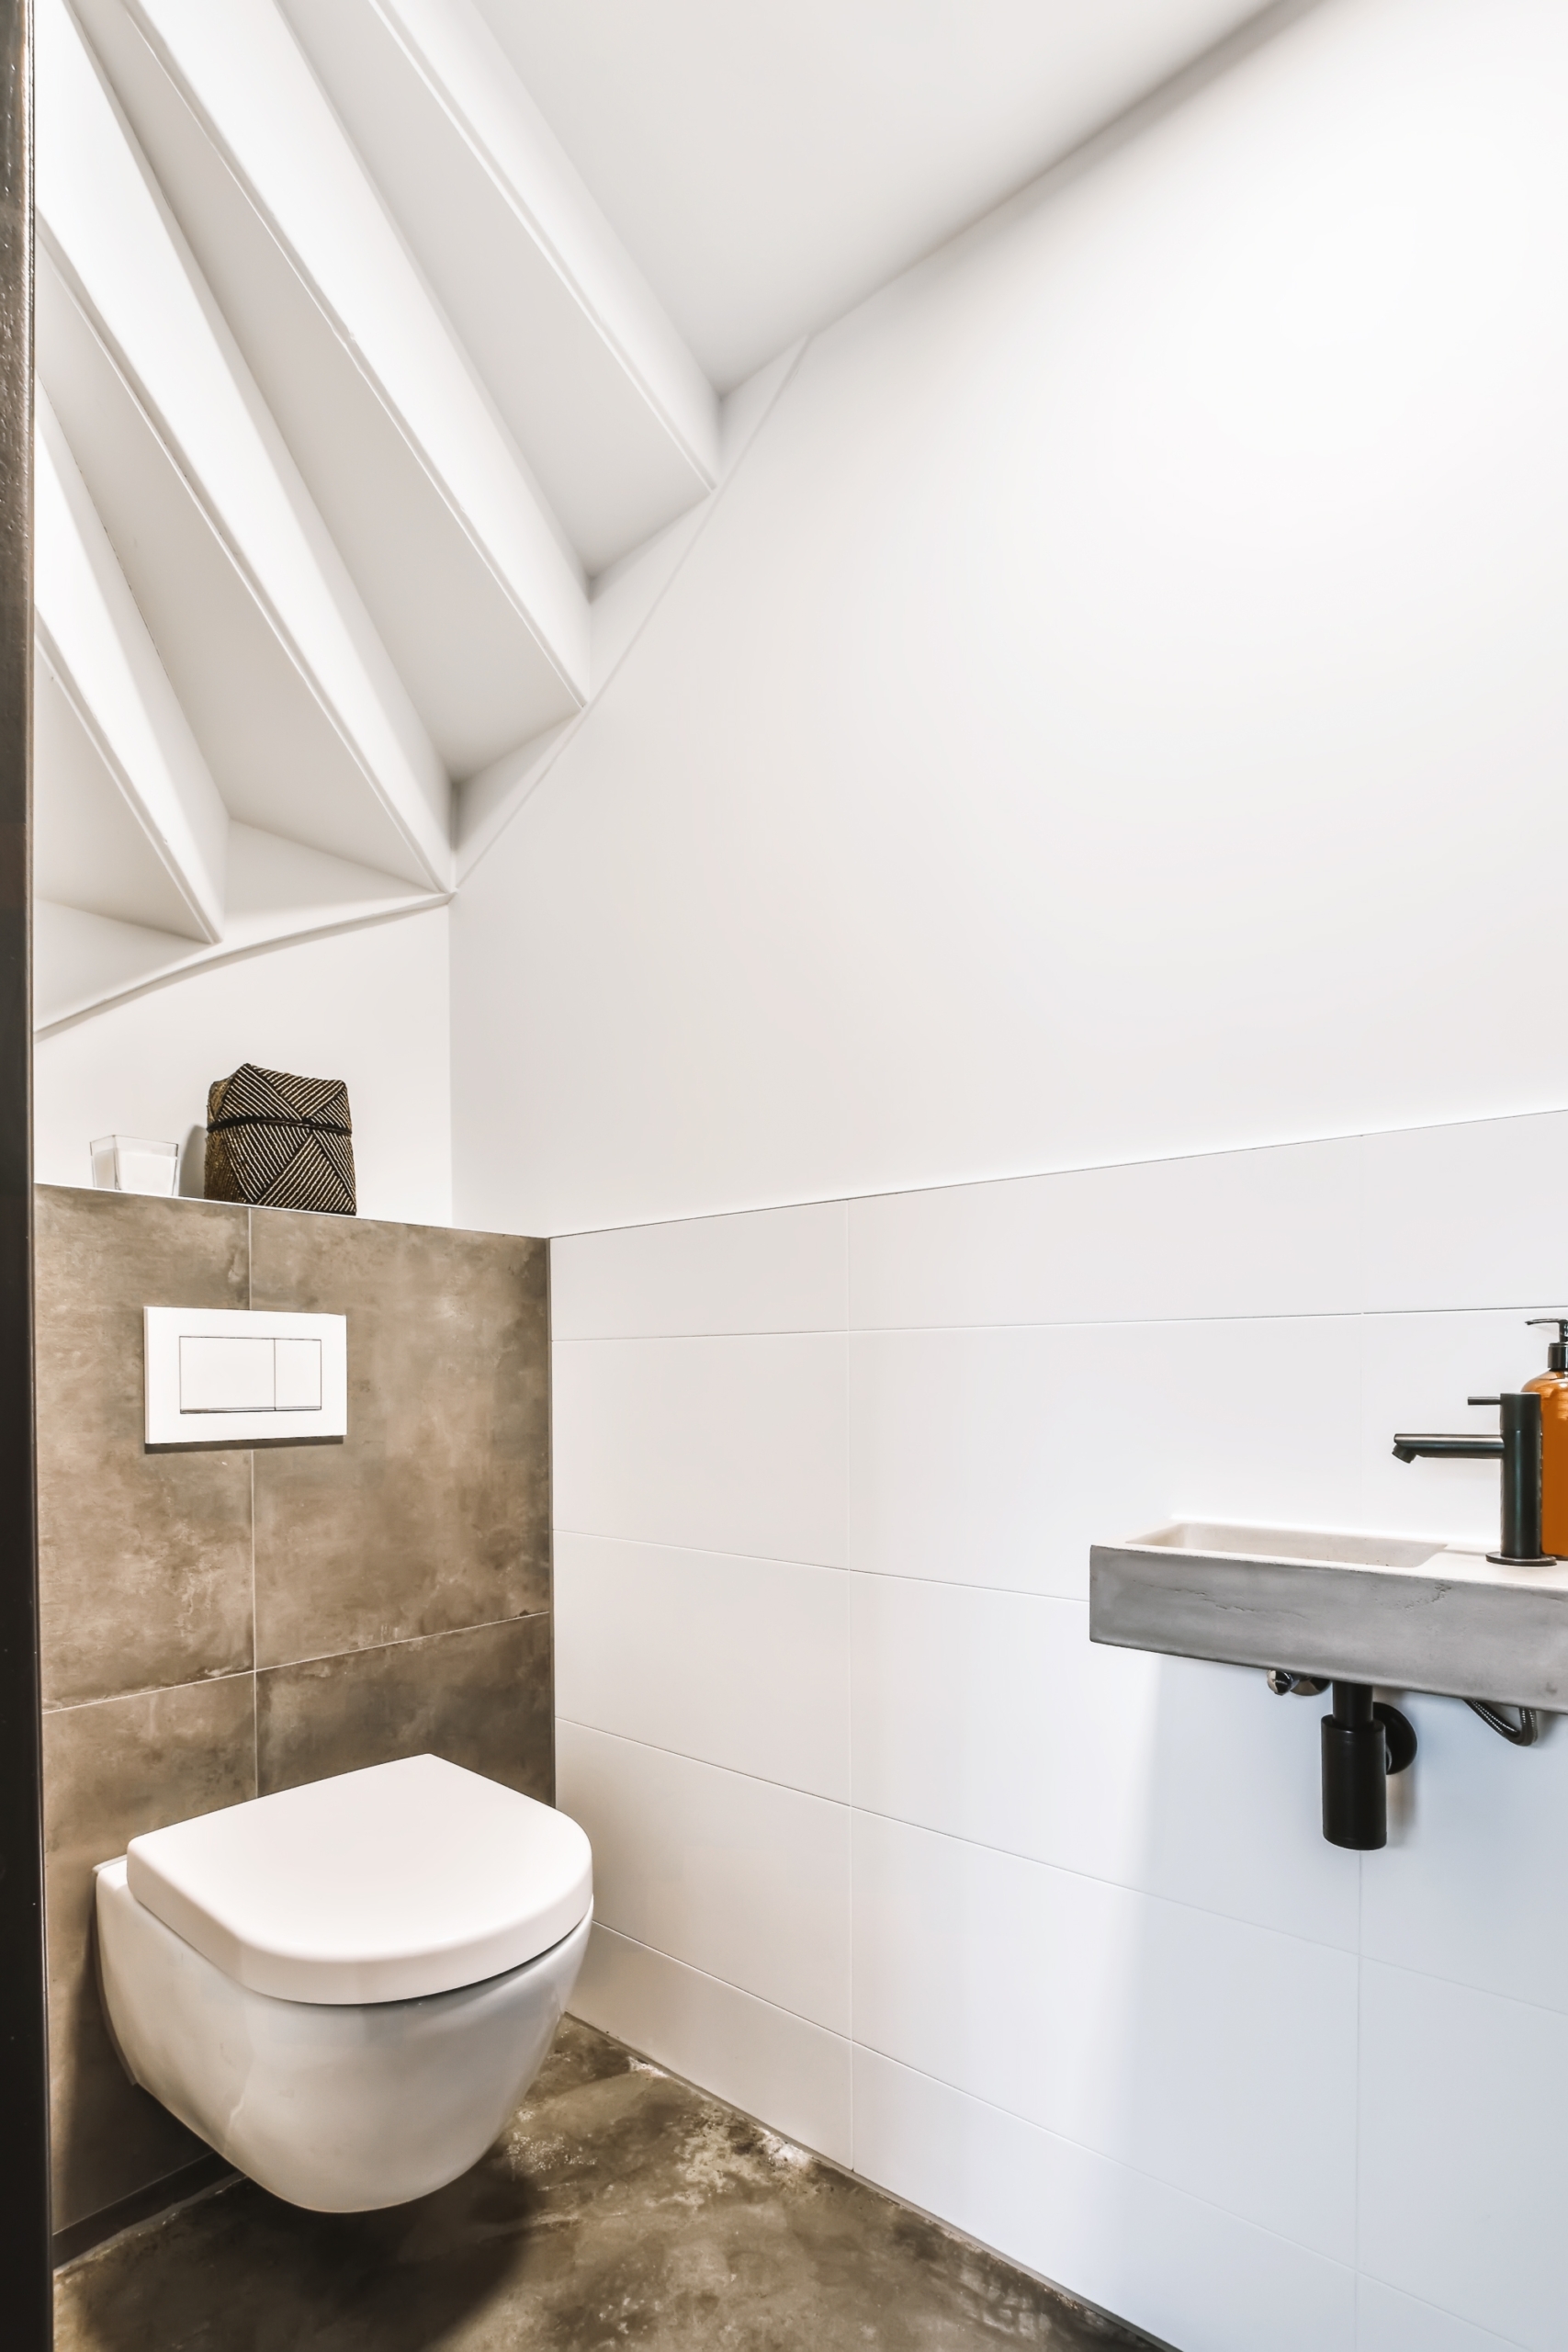 Bố trí nhà vệ sinh dành cho khách dưới gầm cầu thang để tiện cho khách ‘giải tỏa’. (Ảnh: Shutterstock)